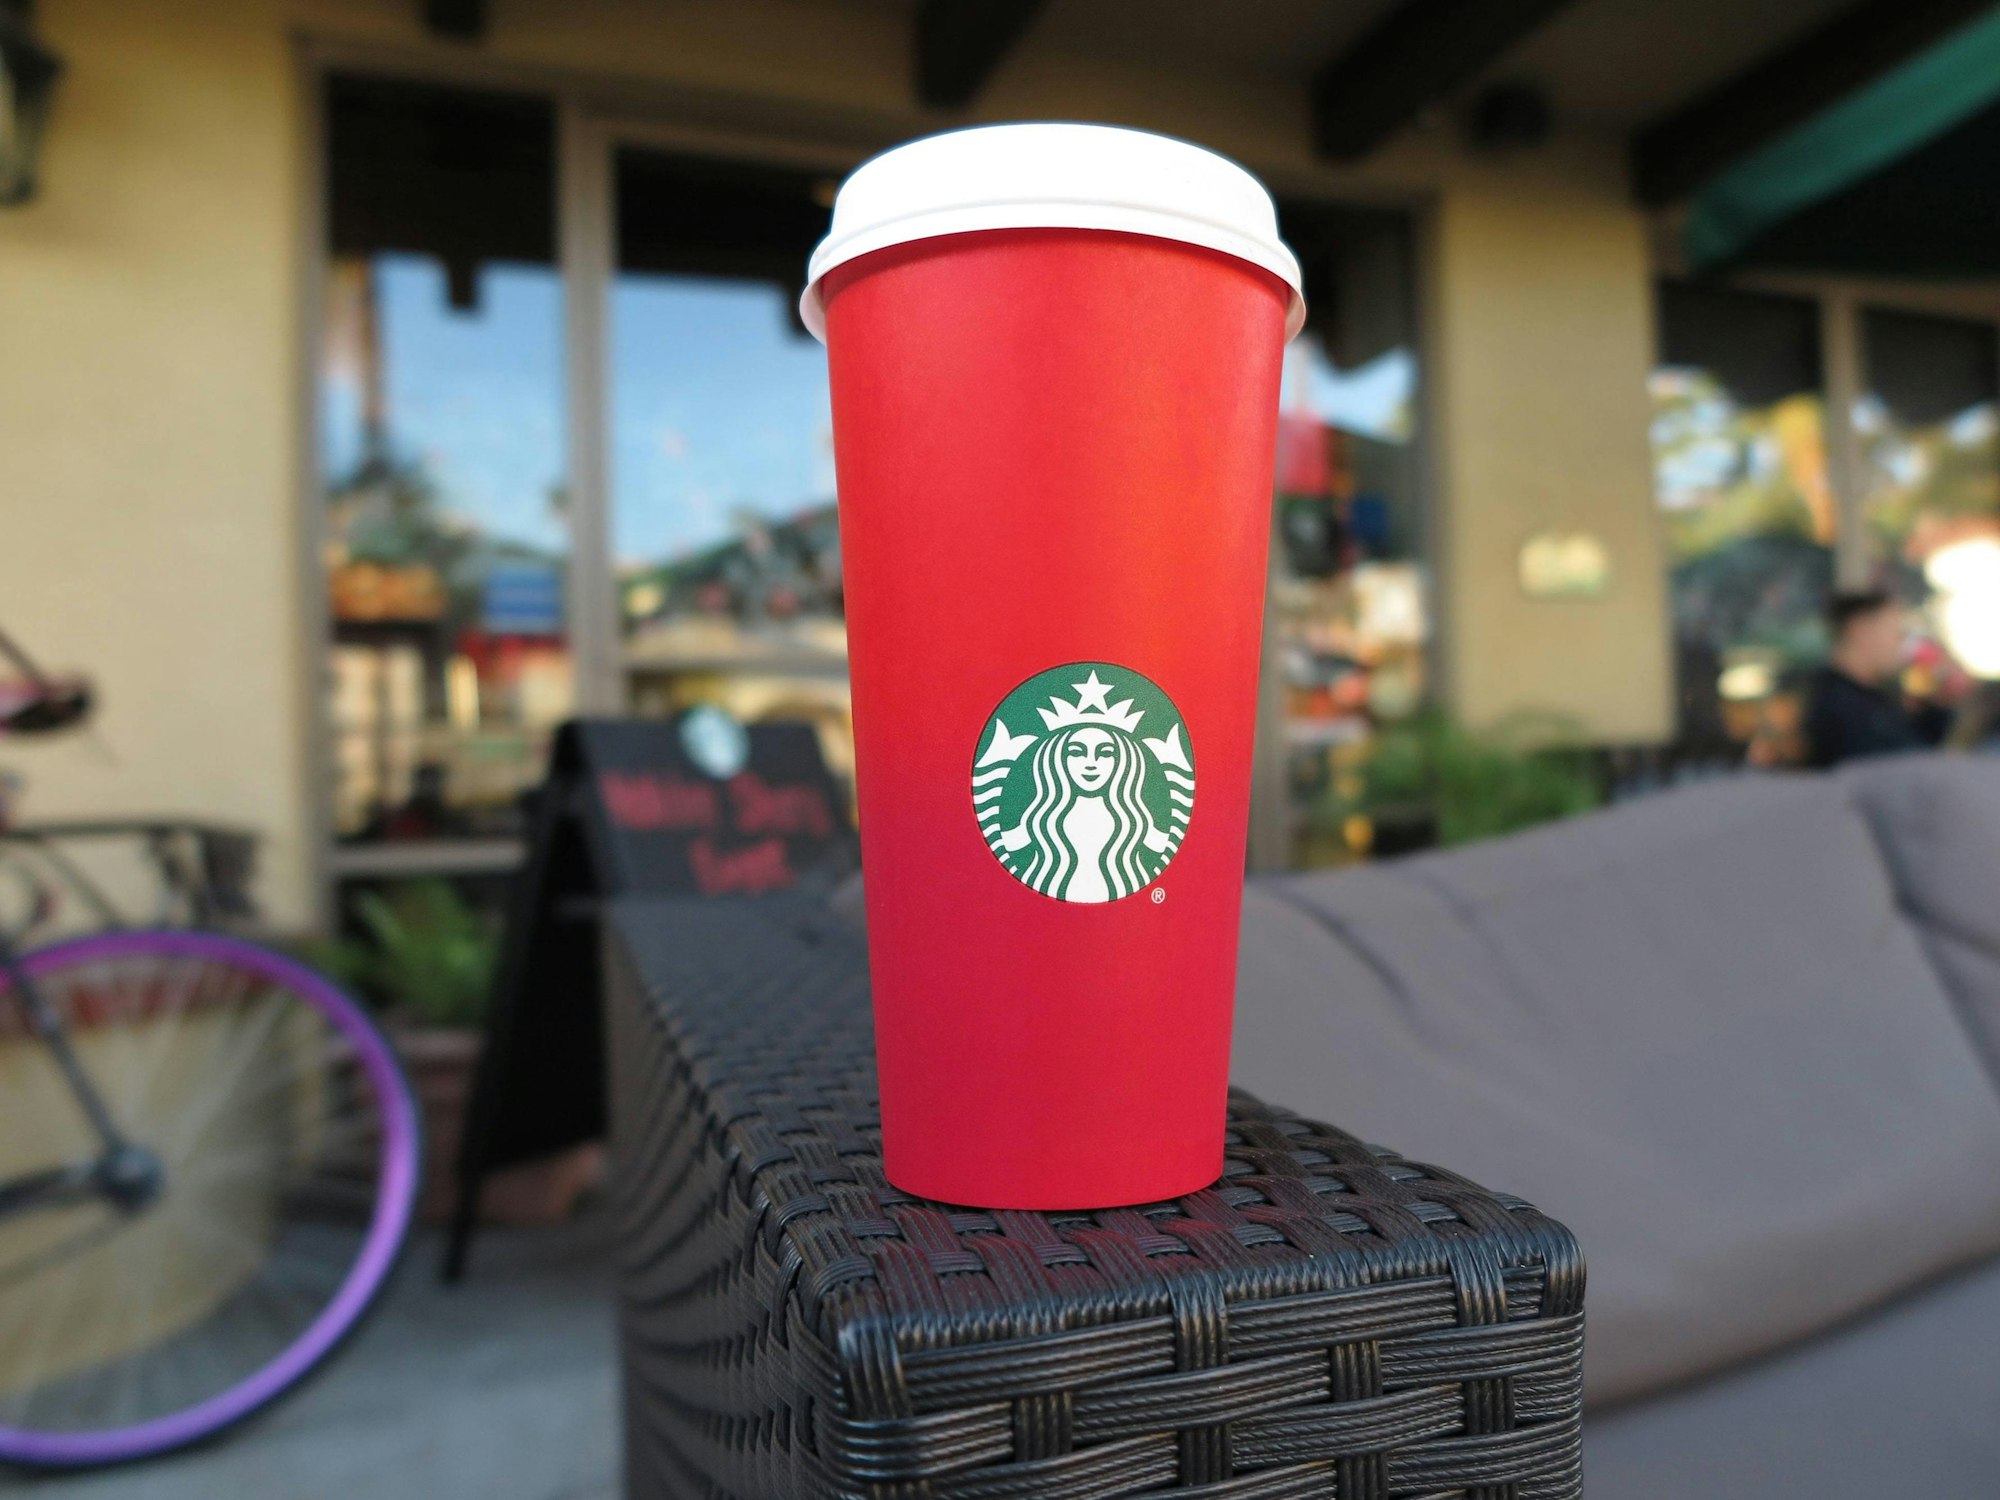 Ein roter To-go-Becher von Starbucks steht auf der Armlehne einer Couch.